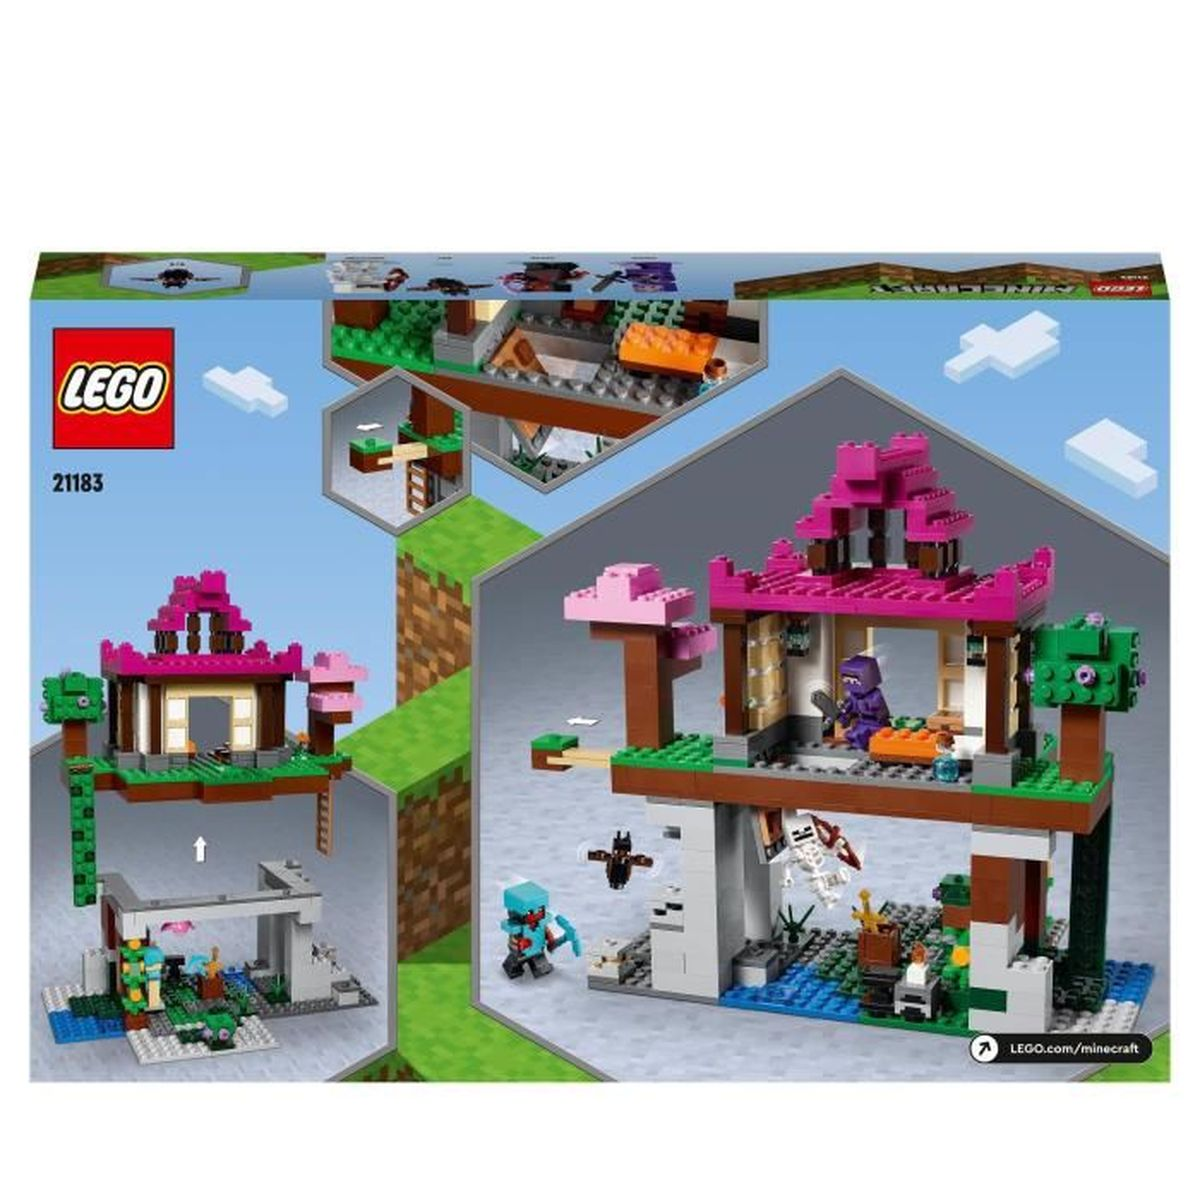 LEGO 21183 Trainingsgelande Bausatz Das Minecraft